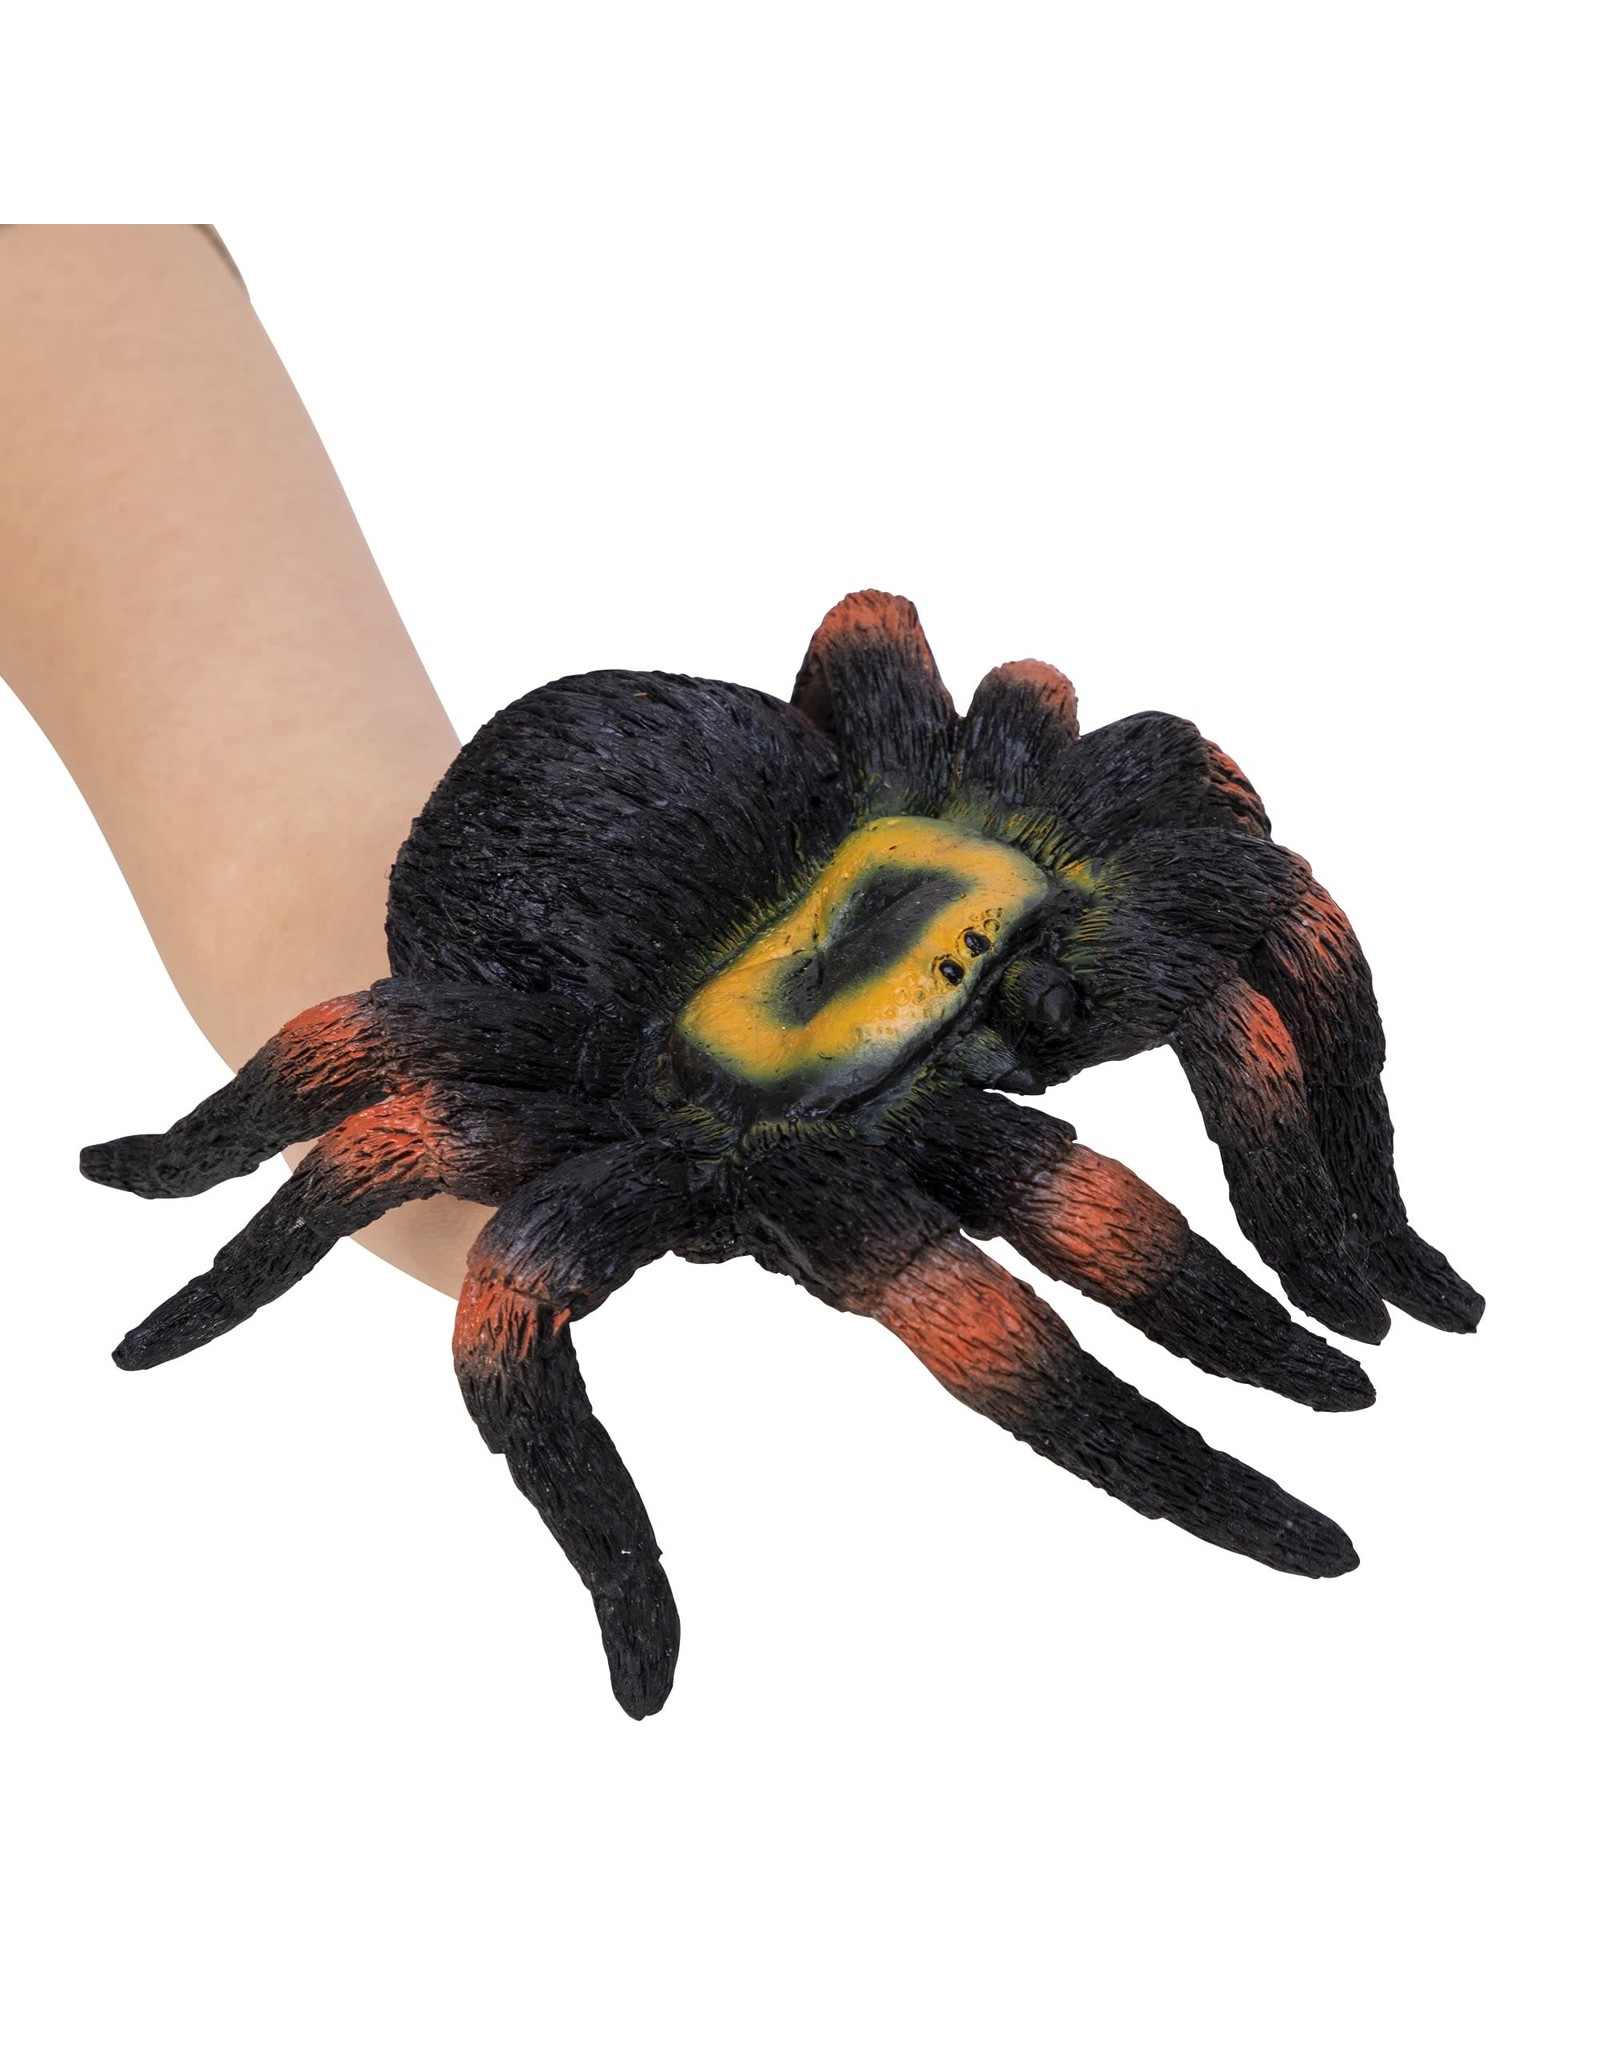 Spider Hand Puppet